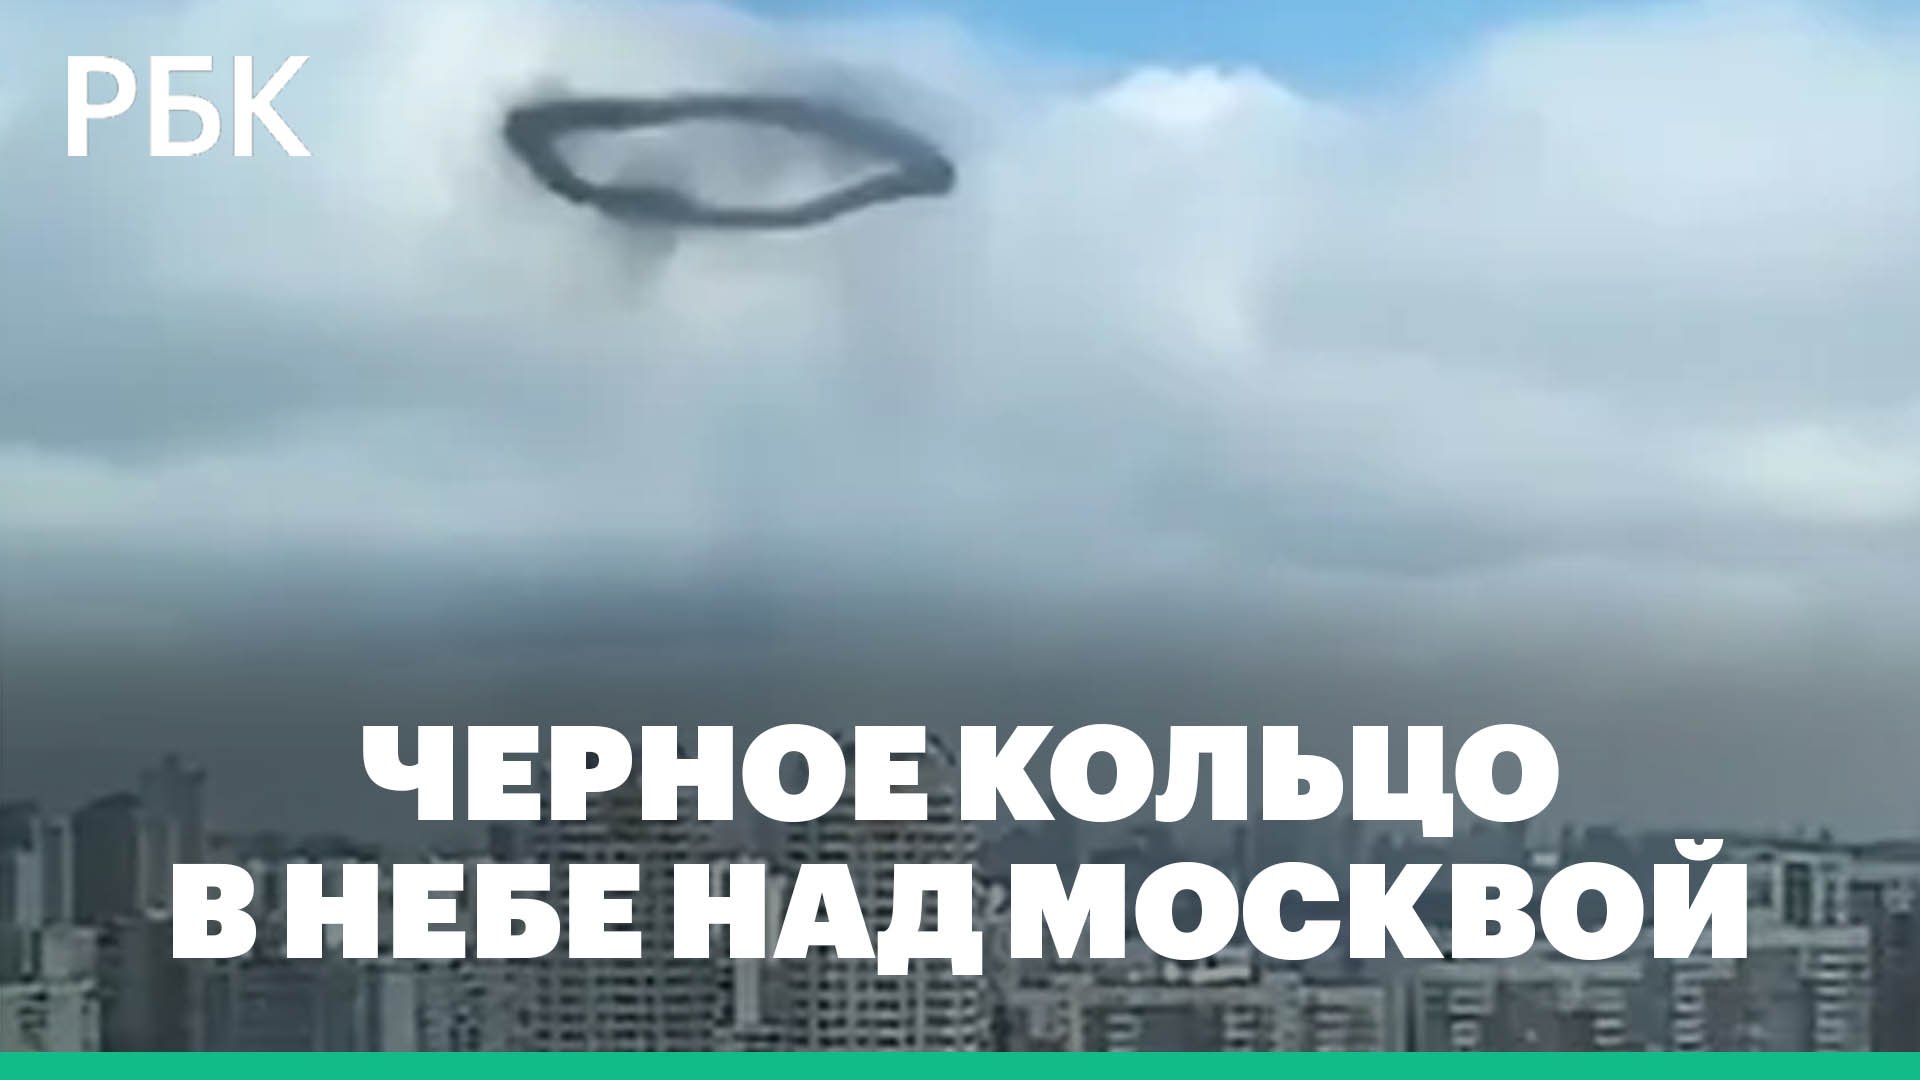 Как выглядело черное кольцо в небе, которое сняли москвичи